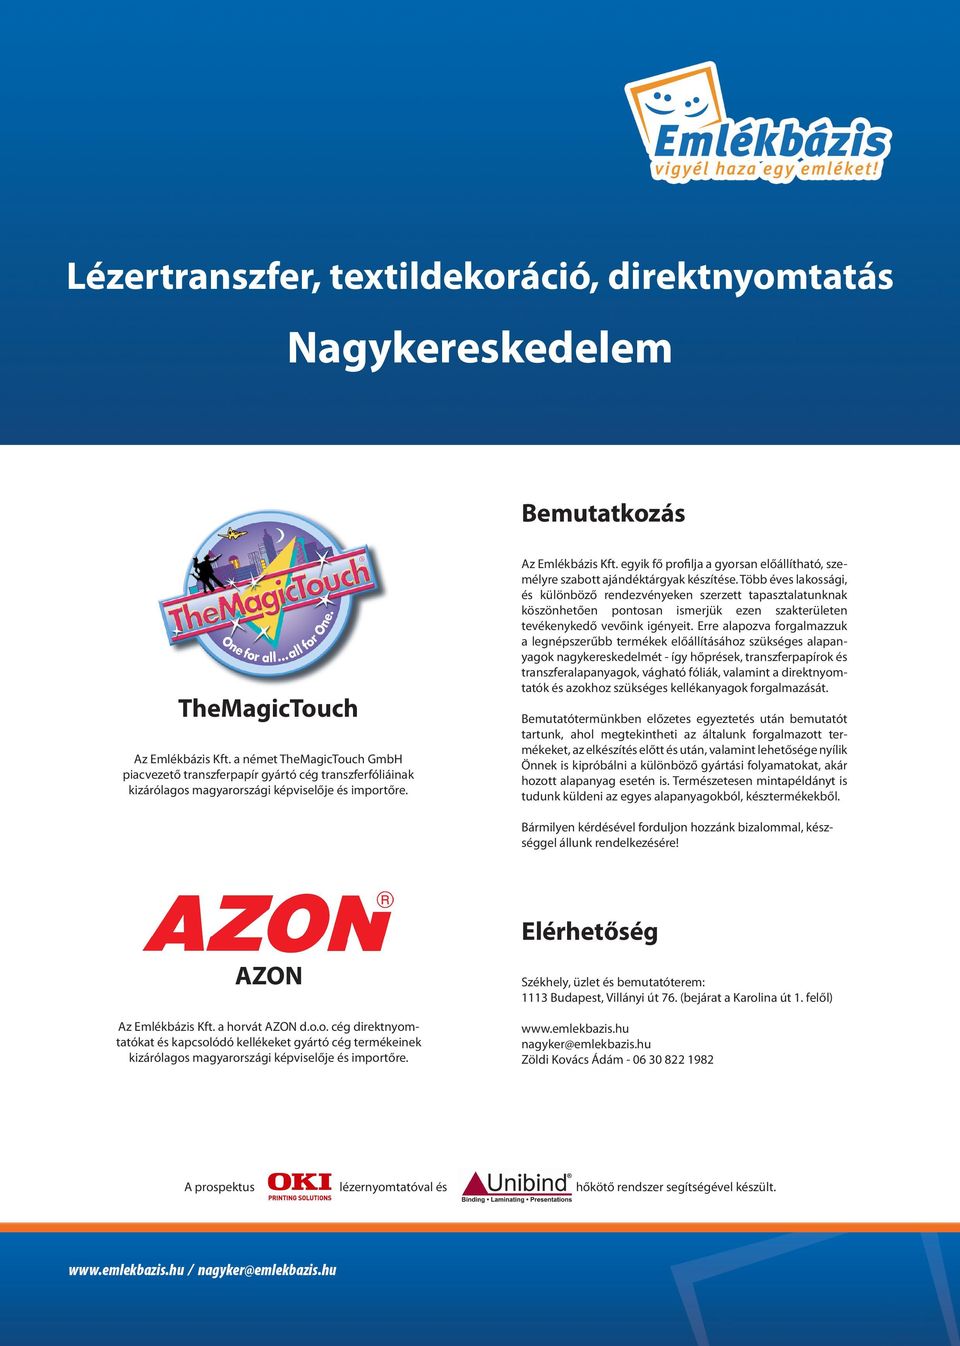 Nagykereskedelem. Lézertranszfer, textildekoráció, direktnyomtatás.  Bemutatkozás. TheMagicTouch. Elérhetőség AZON - PDF Free Download